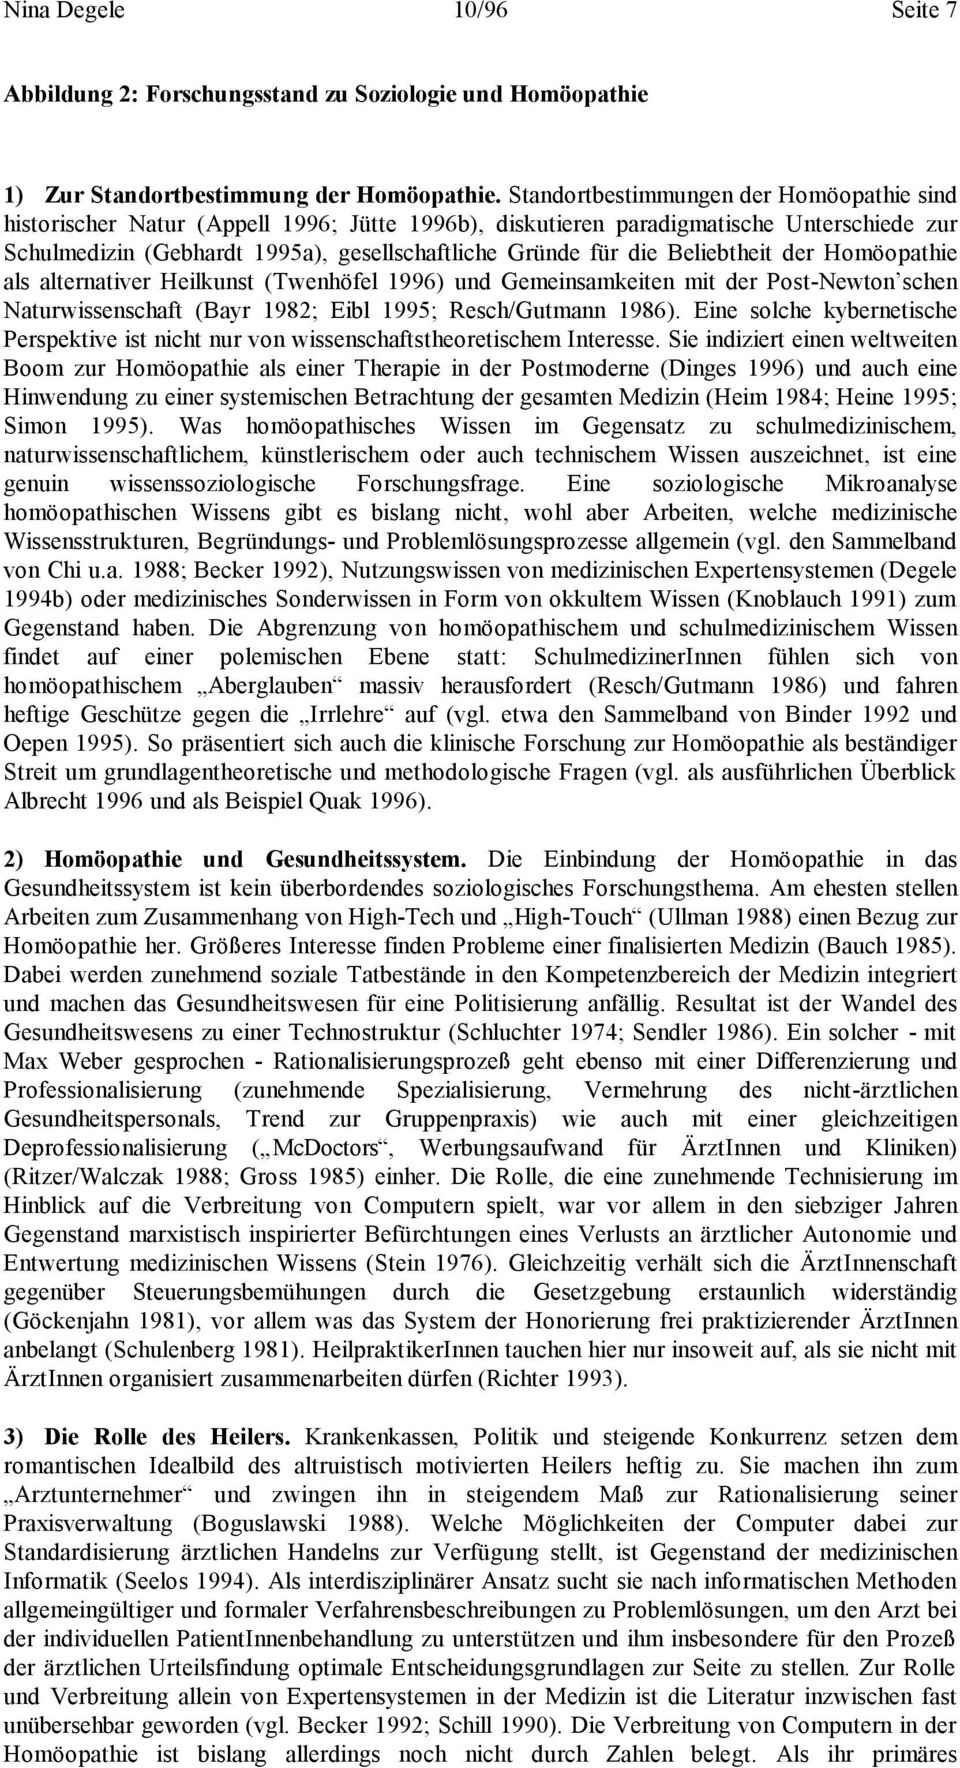 Beliebtheit der Homöopathie als alternativer Heilkunst (Twenhöfel 1996) und Gemeinsamkeiten mit der Post-Newton schen Naturwissenschaft (Bayr 1982; Eibl 1995; Resch/Gutmann 1986).